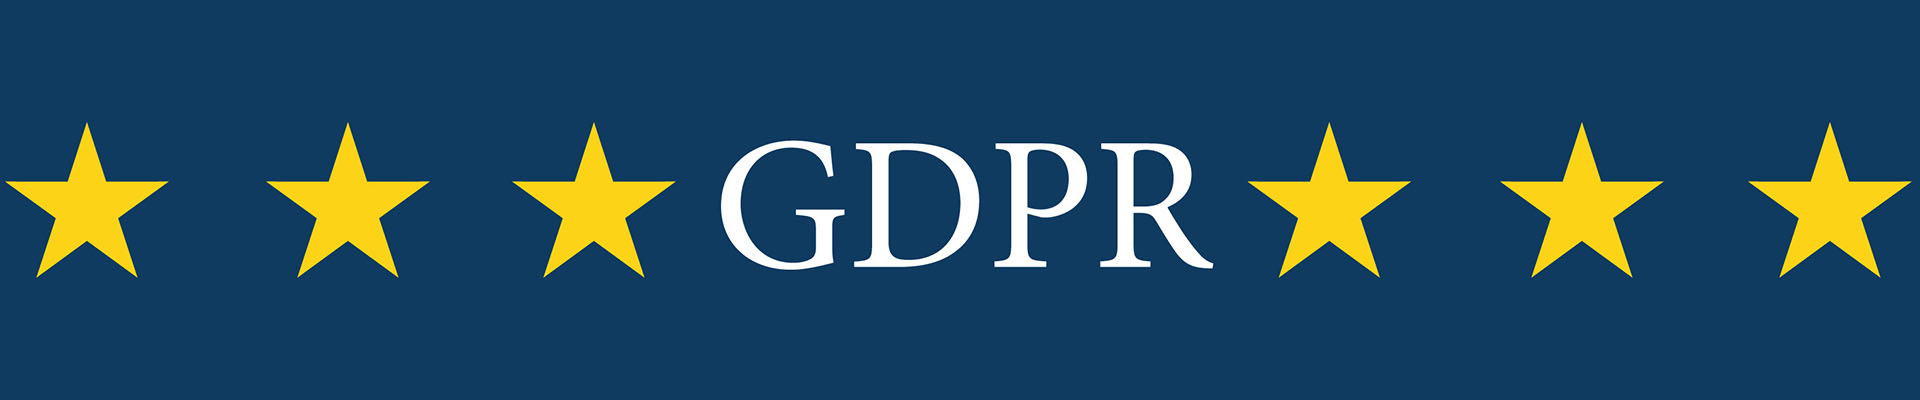 GDPR - Le regole della nuova Privacy